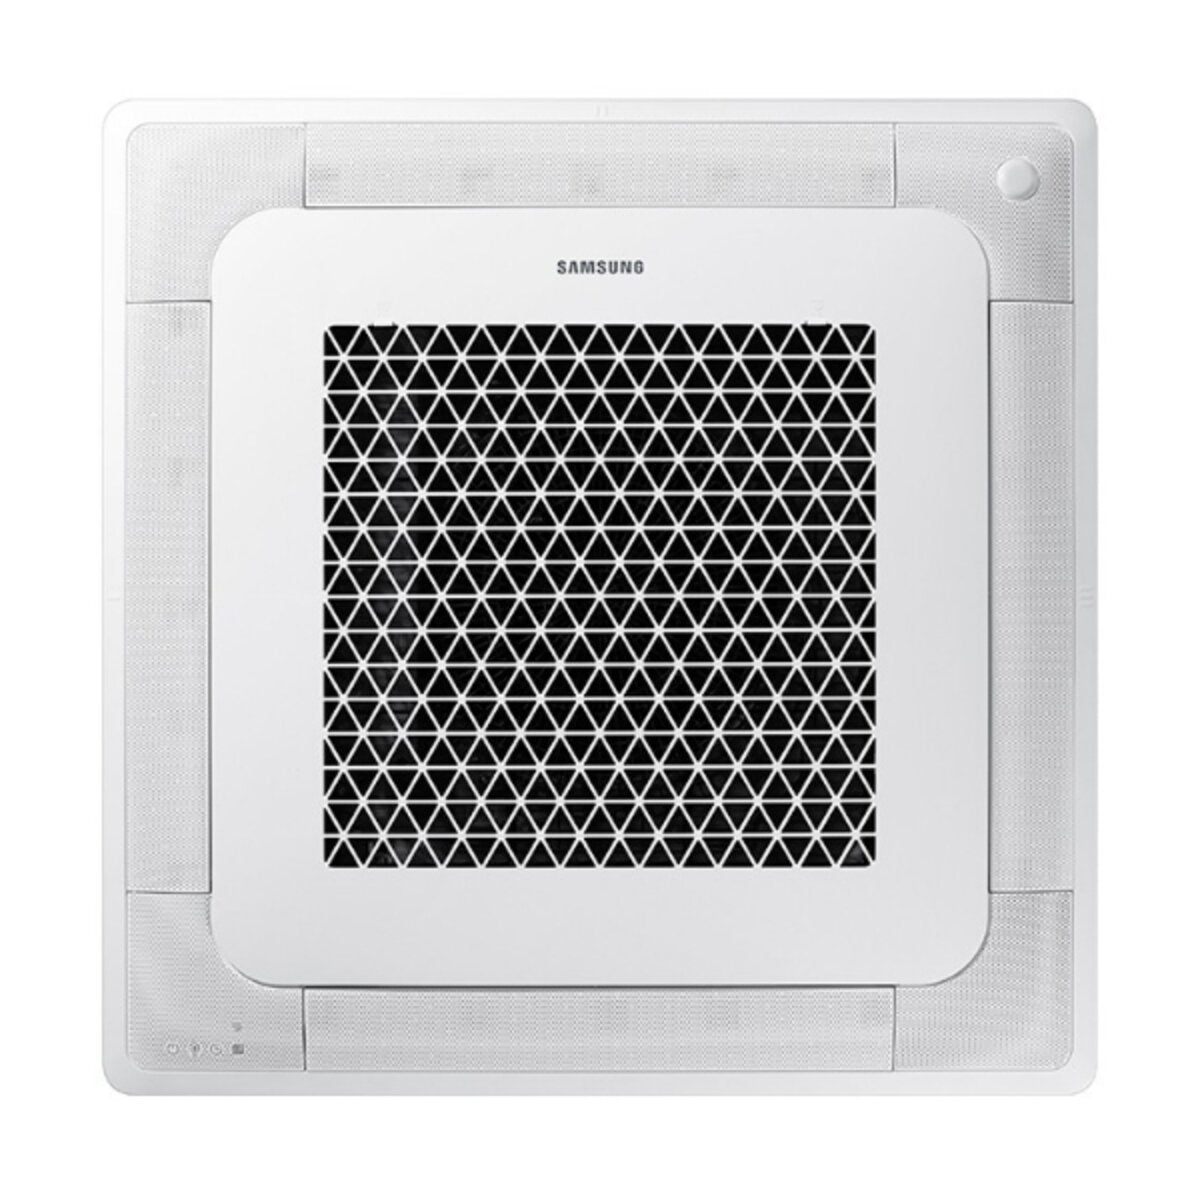 Samsung Klimagerät Windfree 4-fach Pentasplit 9000 + 9000 + 9000 + 12000 + 12000 BTU Inverter A++ Außengerät 10,0 kW